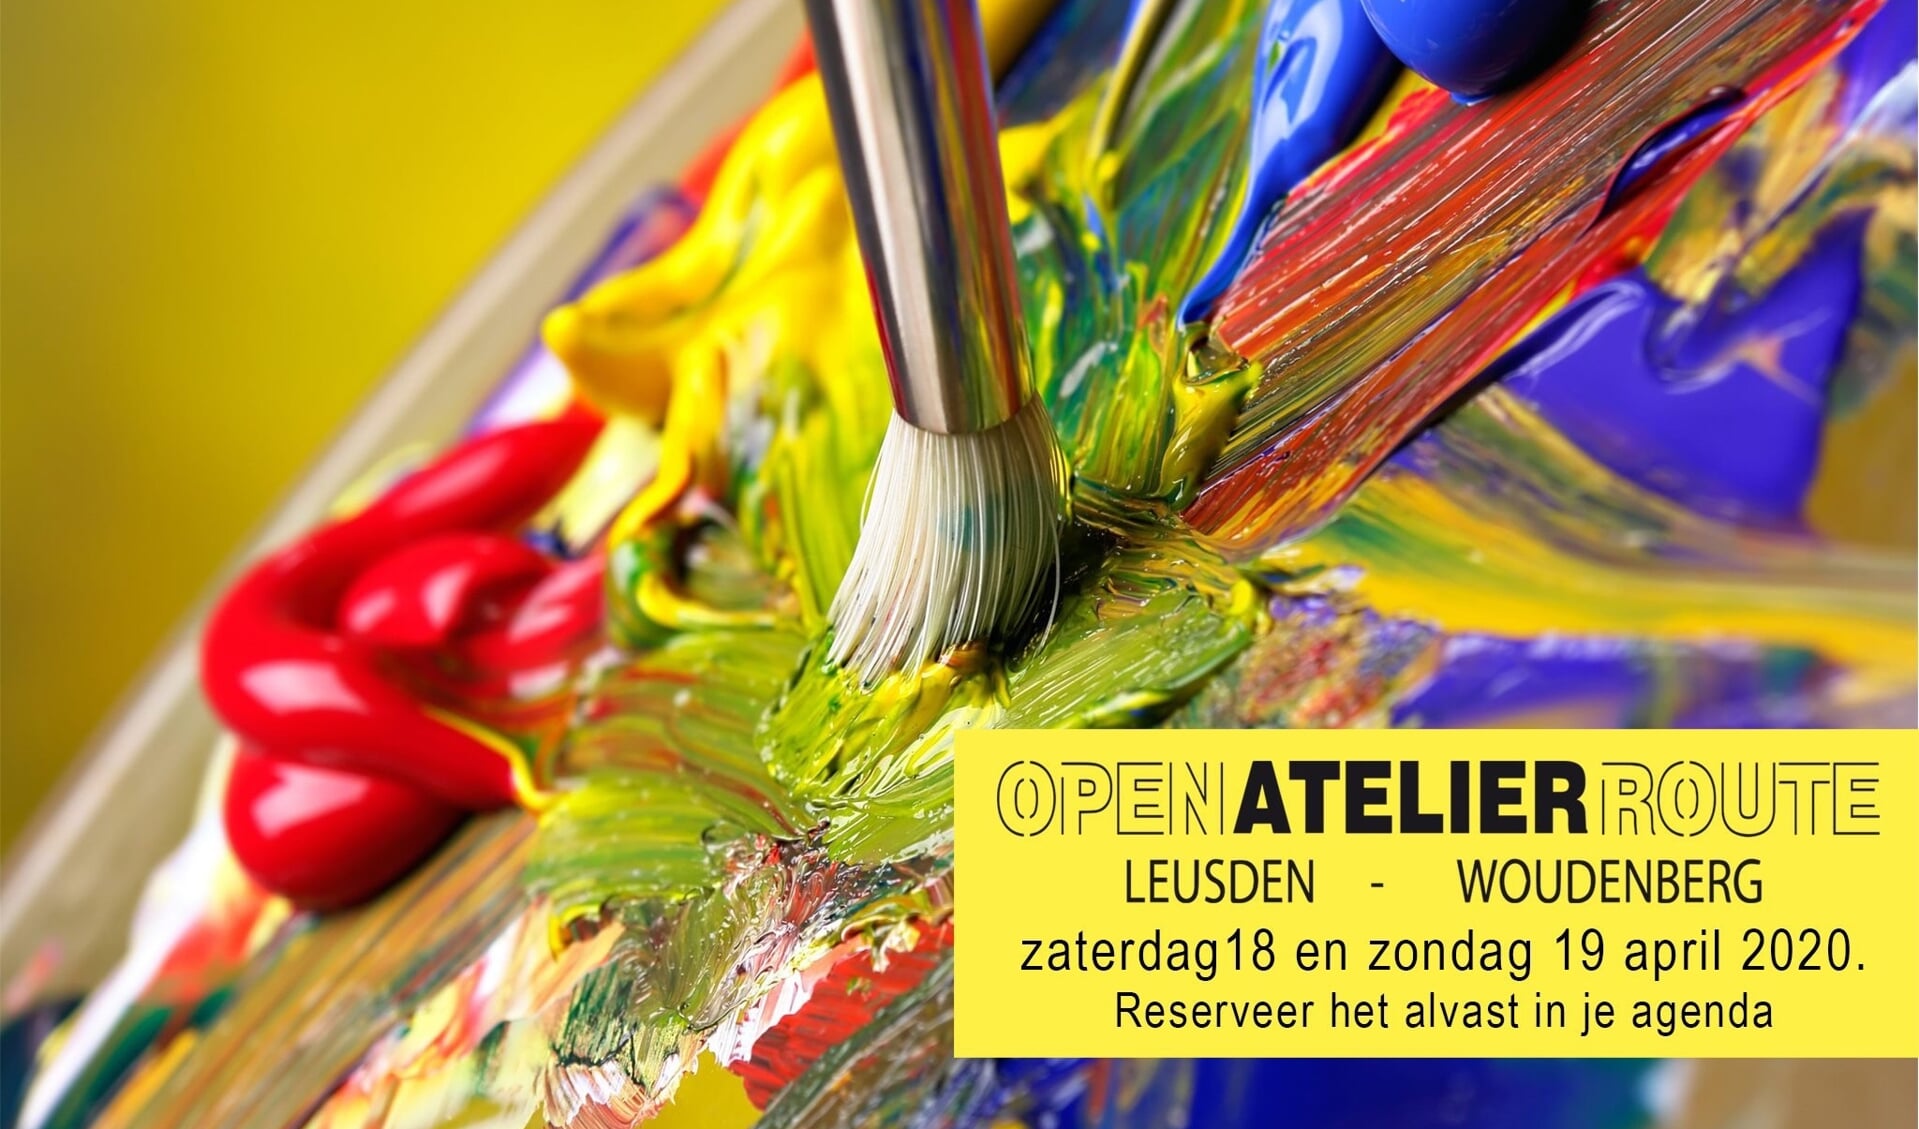 Open Atelier Route Leusden Woudenberg 2020